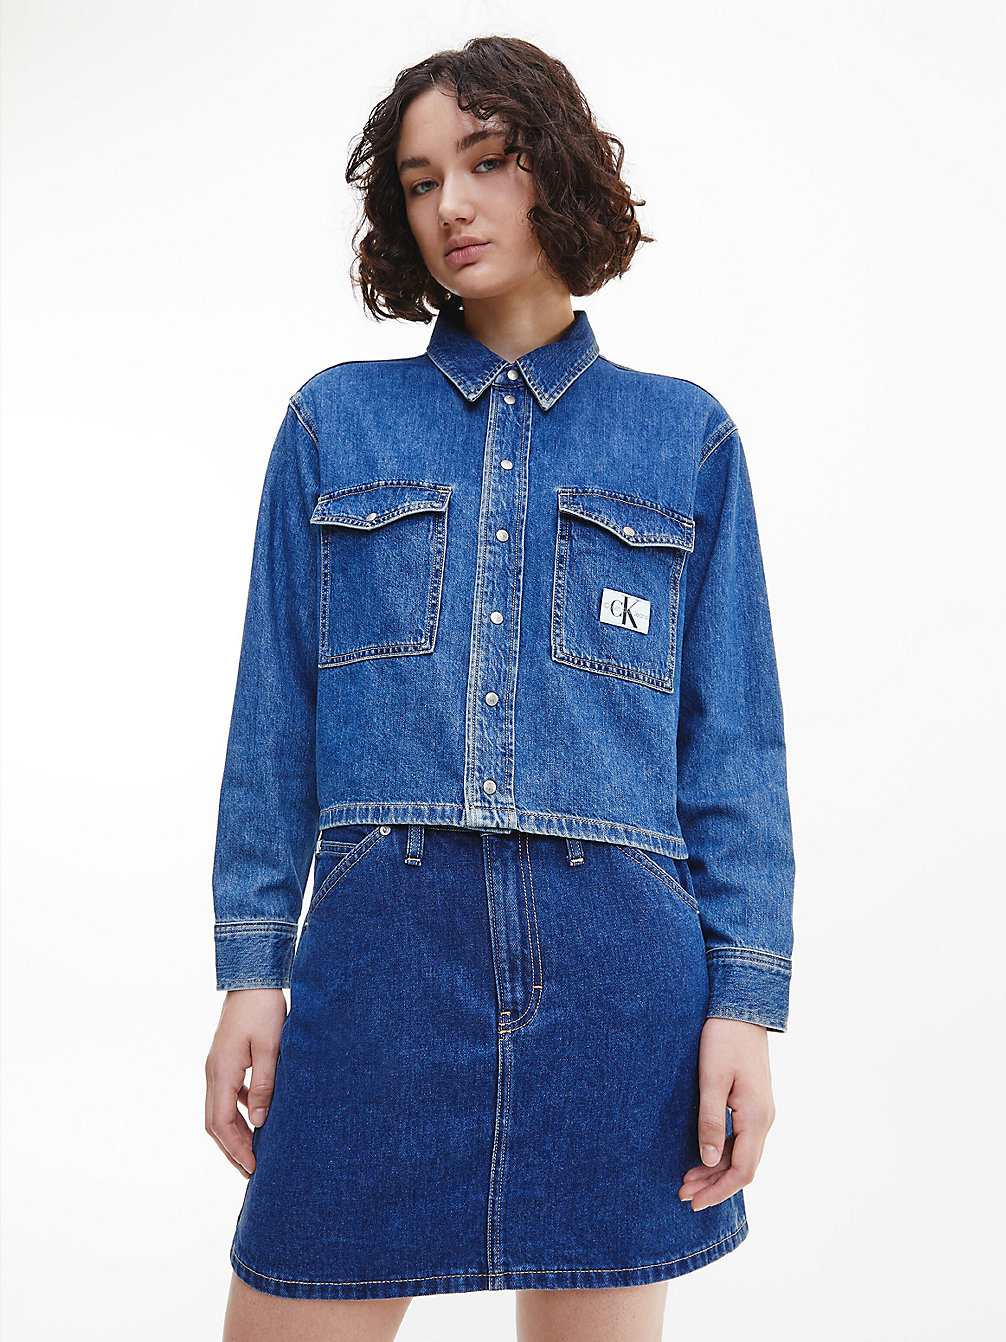 DENIM MEDIUM > Укороченная джинсовая рубашка > undefined Женщины - Calvin Klein